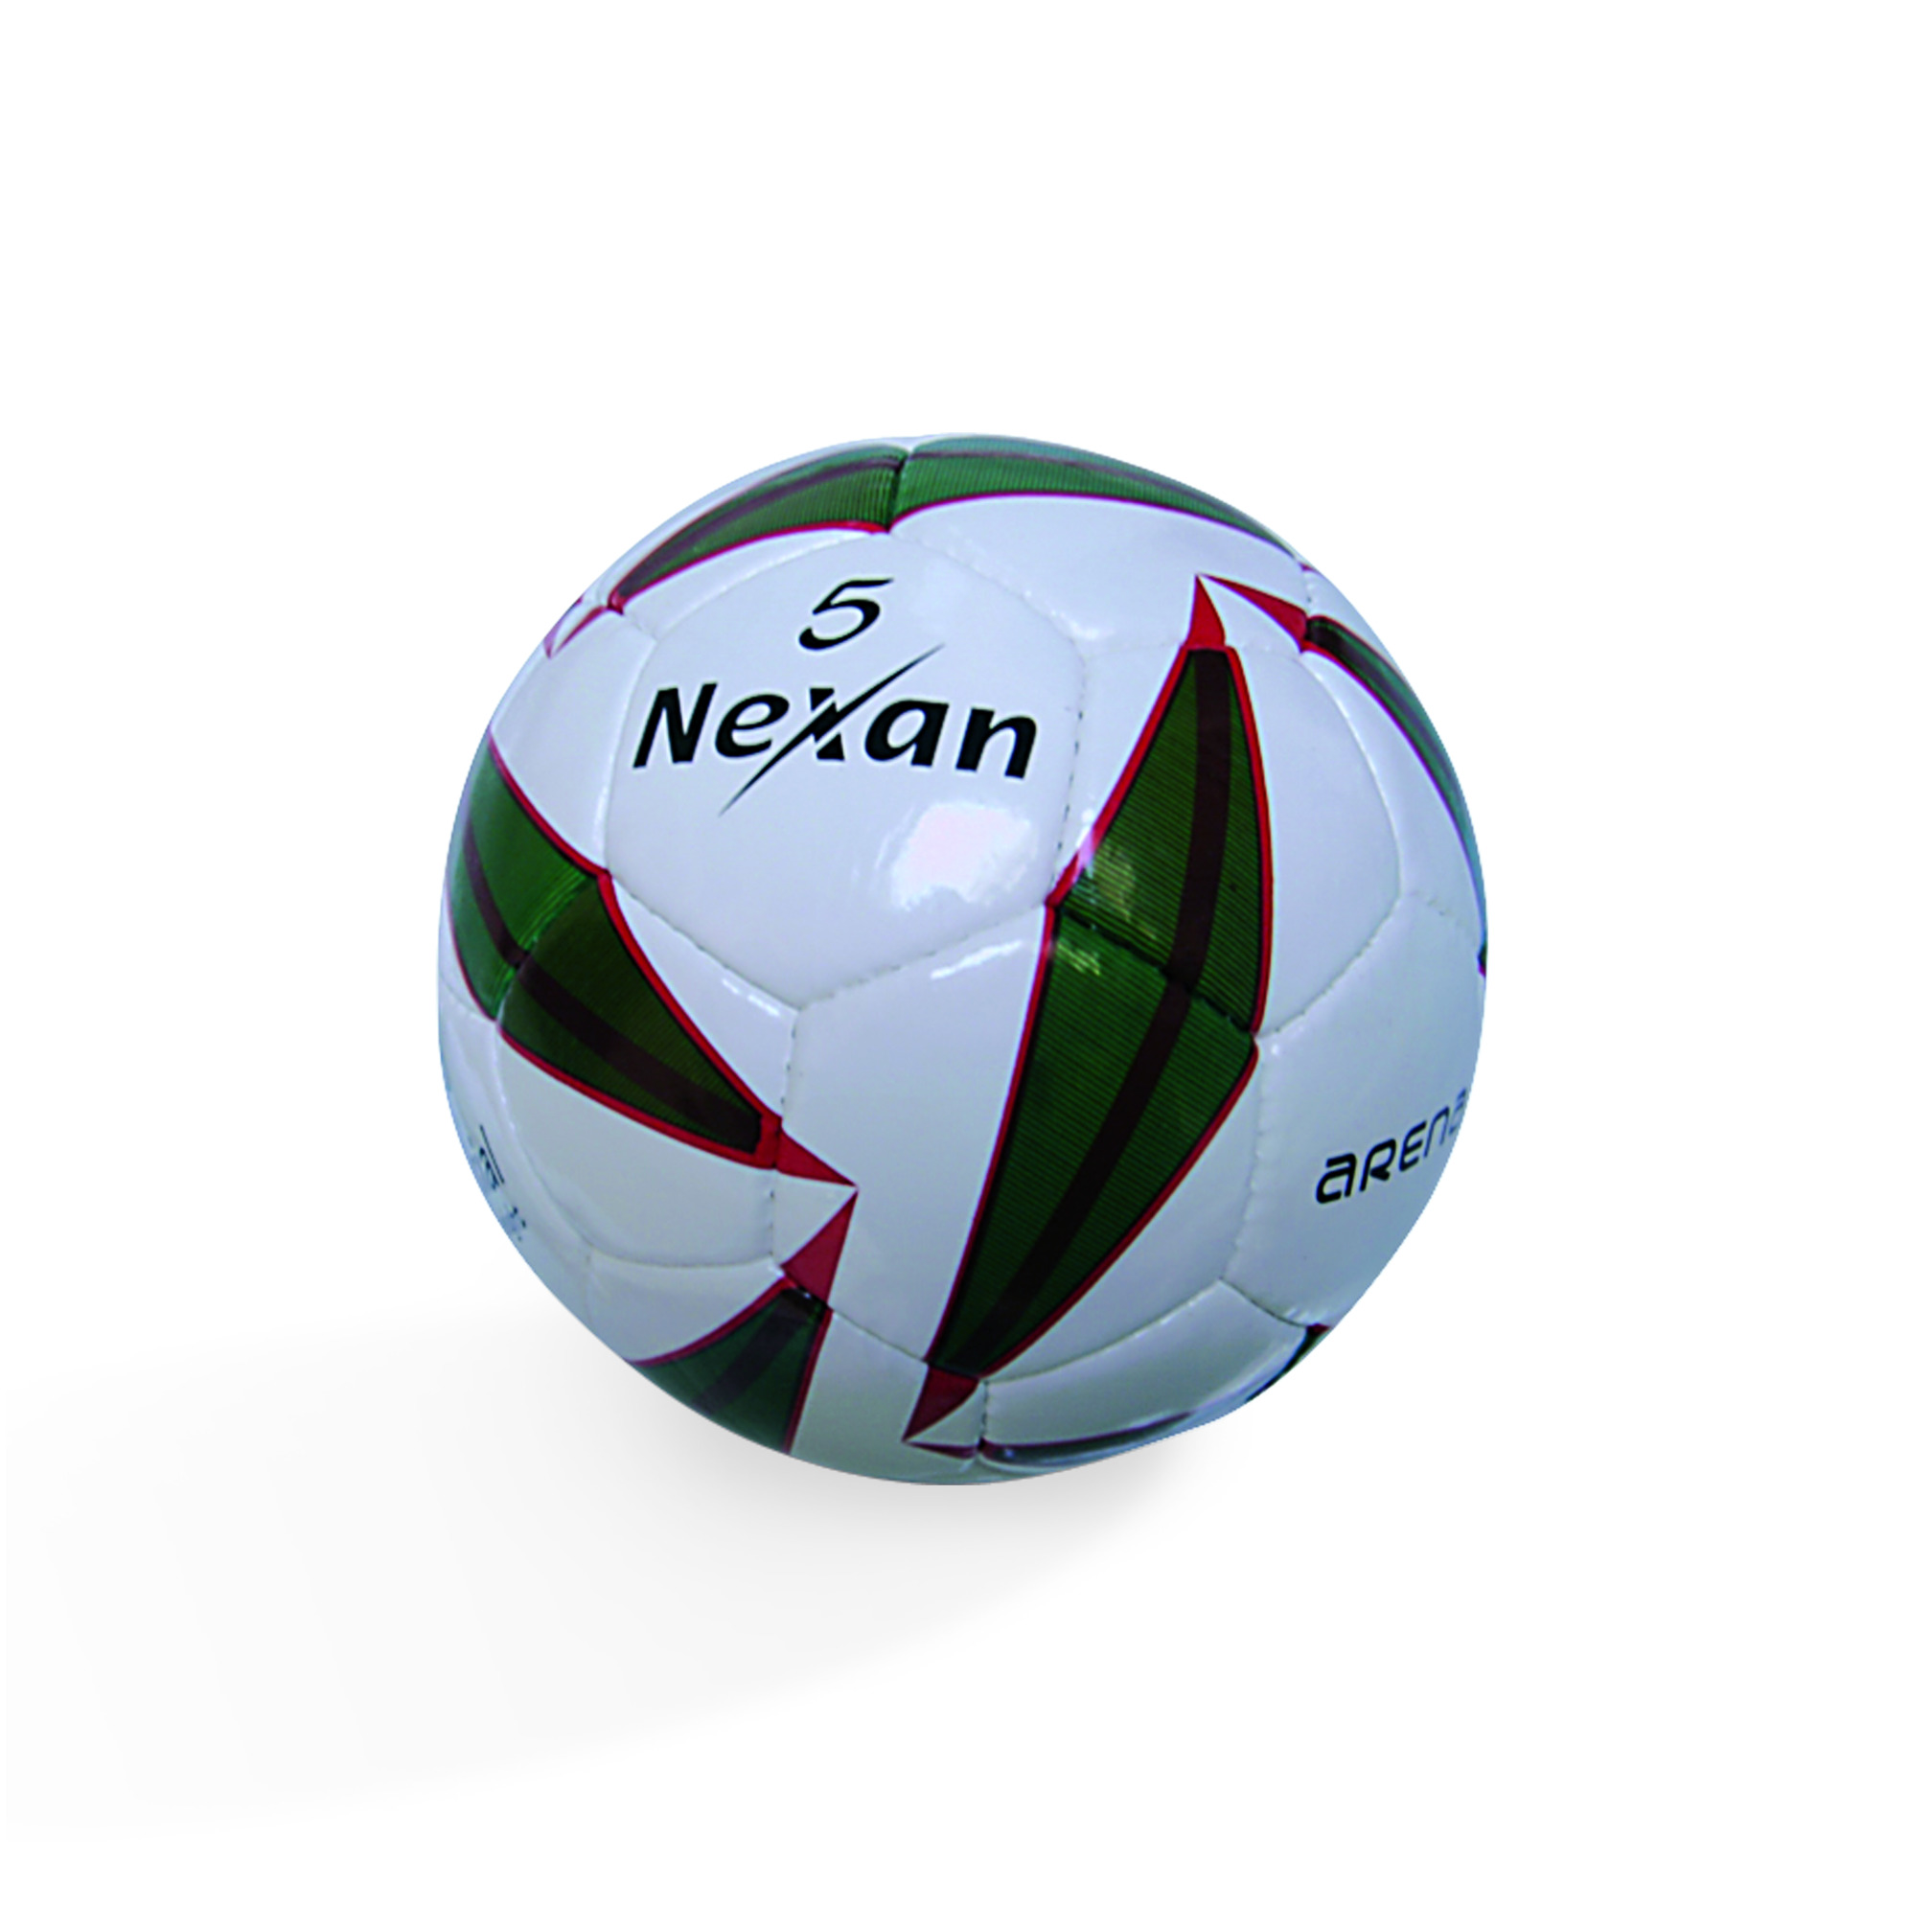 Ballon de football "Nexan" Aréna, T5